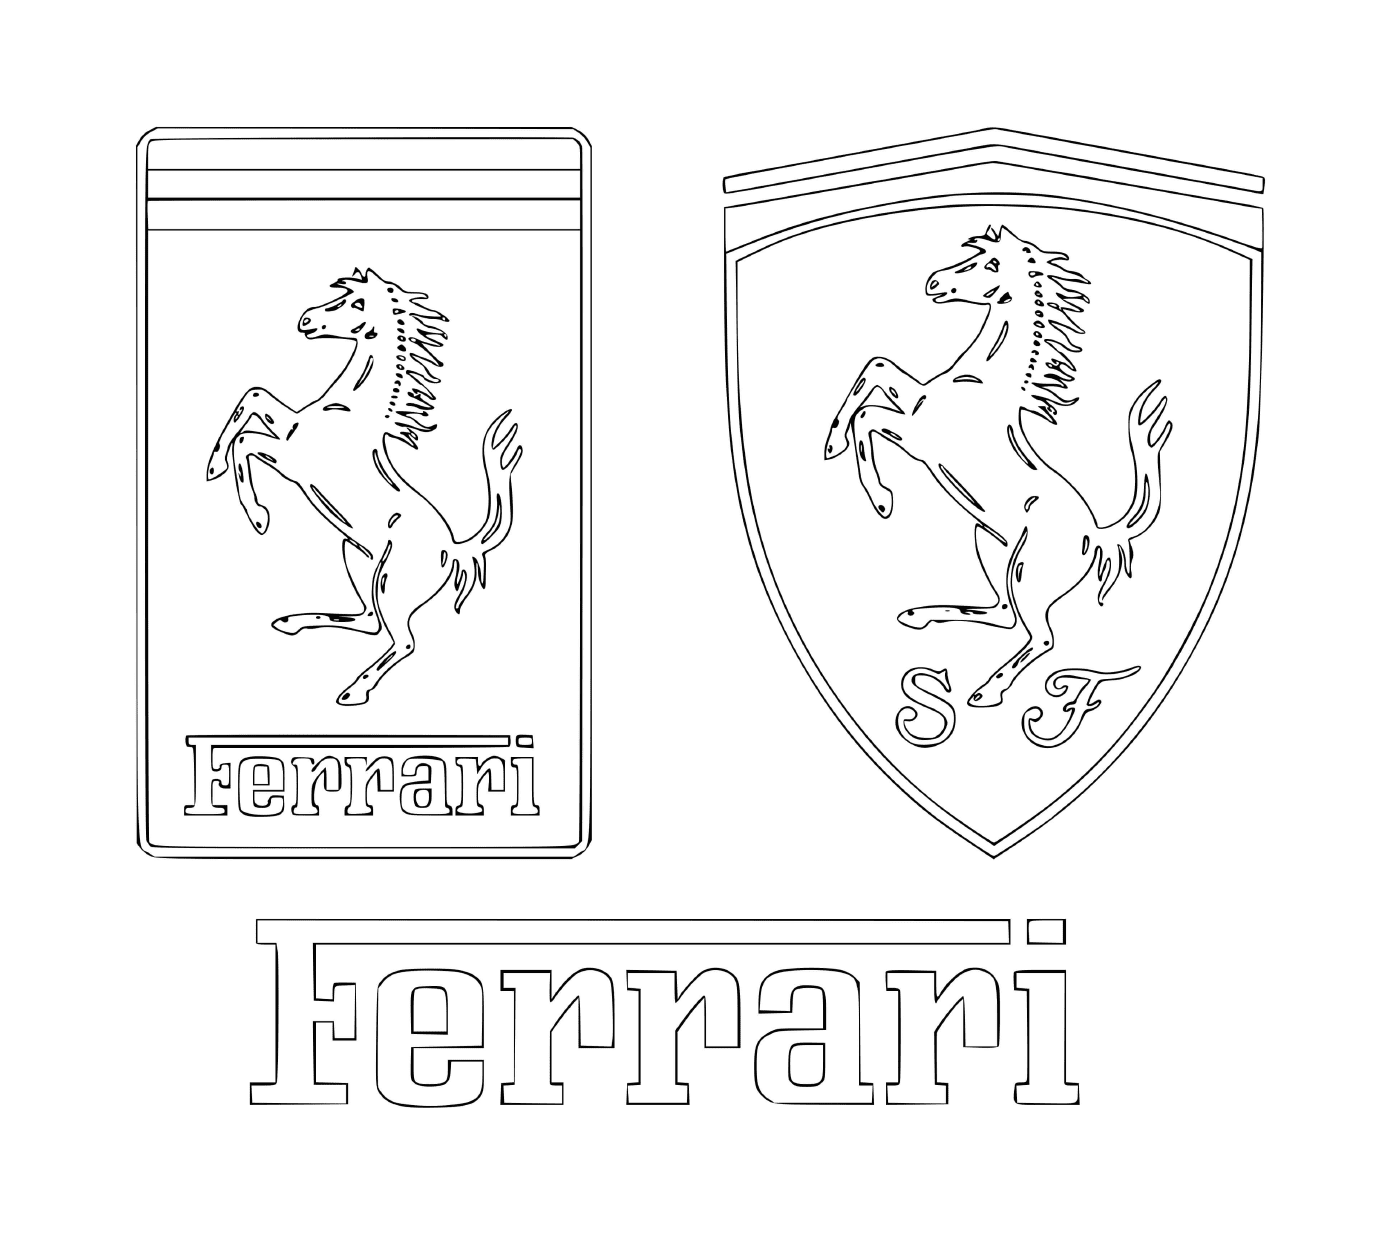  Ferraris Logo 